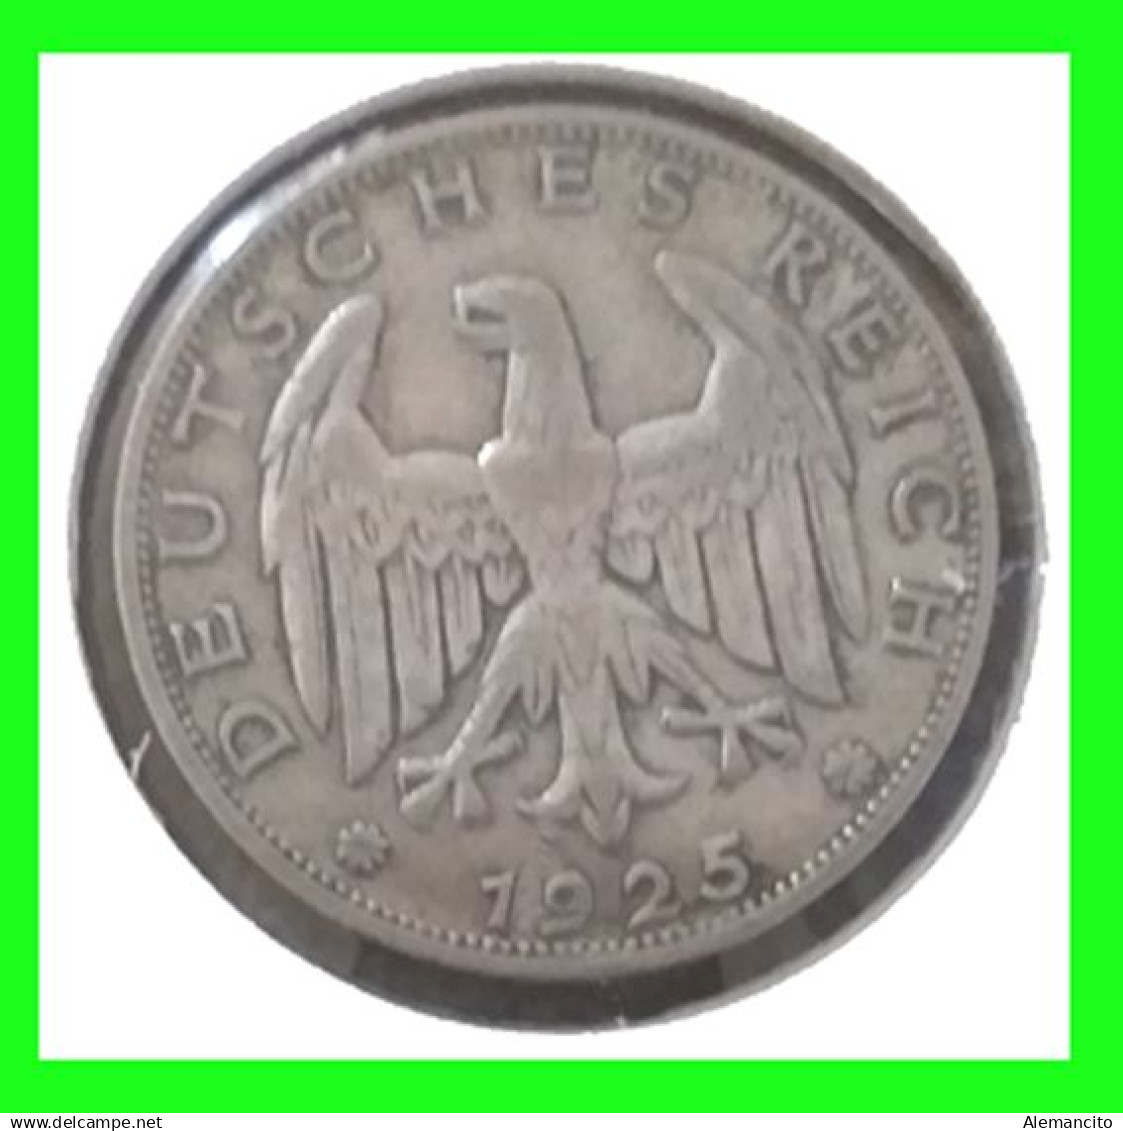 ALEMANIA ( GERMANY ) - WEIMAR REPUBLIC 1 REICHSMARK  DEUTSCHES REICH AÑO 1925 – CECA - D - MUNICH – COMPOSITIONS SILVER - 1 Mark & 1 Reichsmark